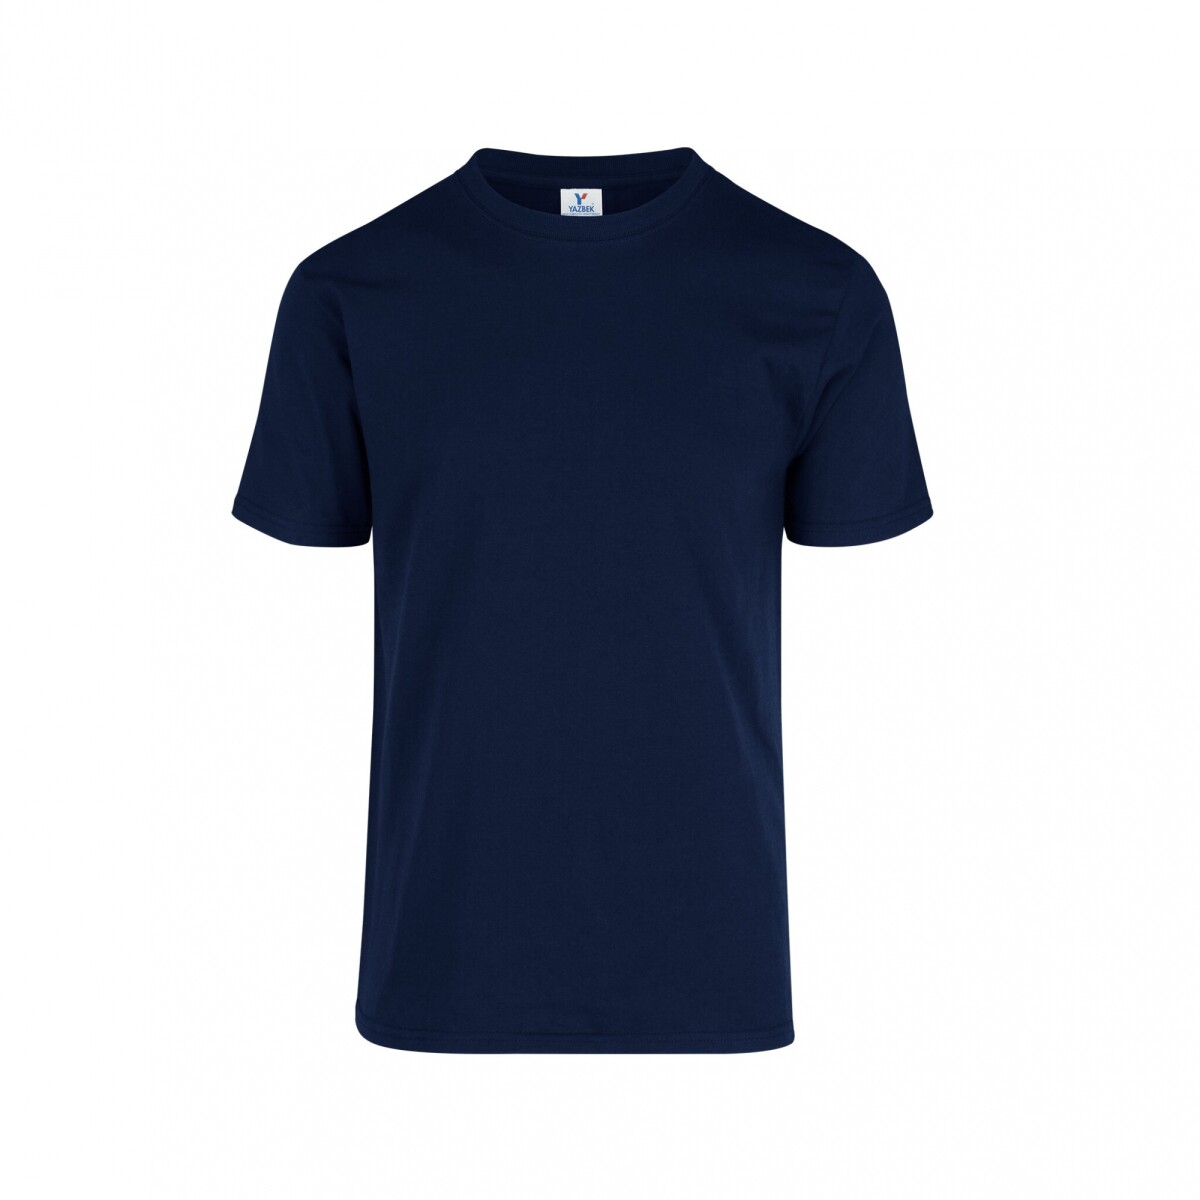 Camiseta a la base peso completo - Azul marino 